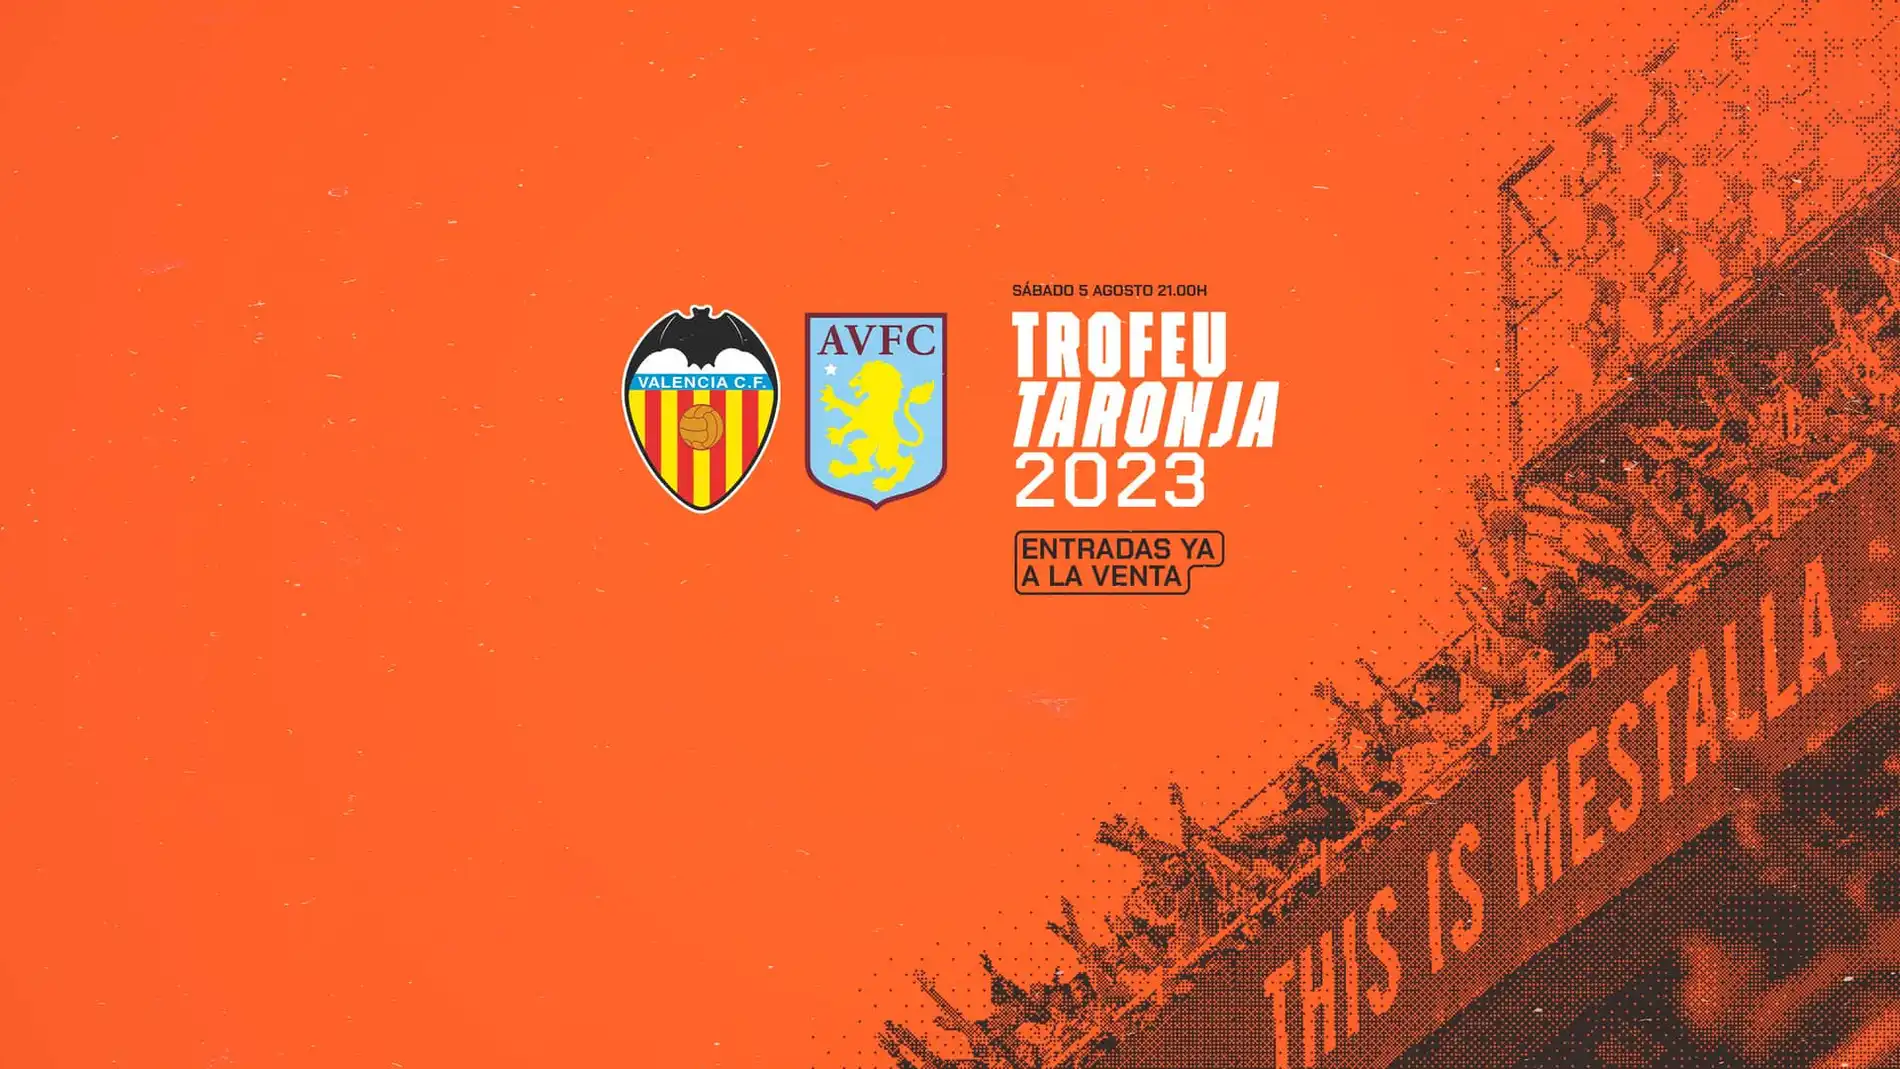 El Valencia pone a la venta las entradas para el Trofeo Naranja